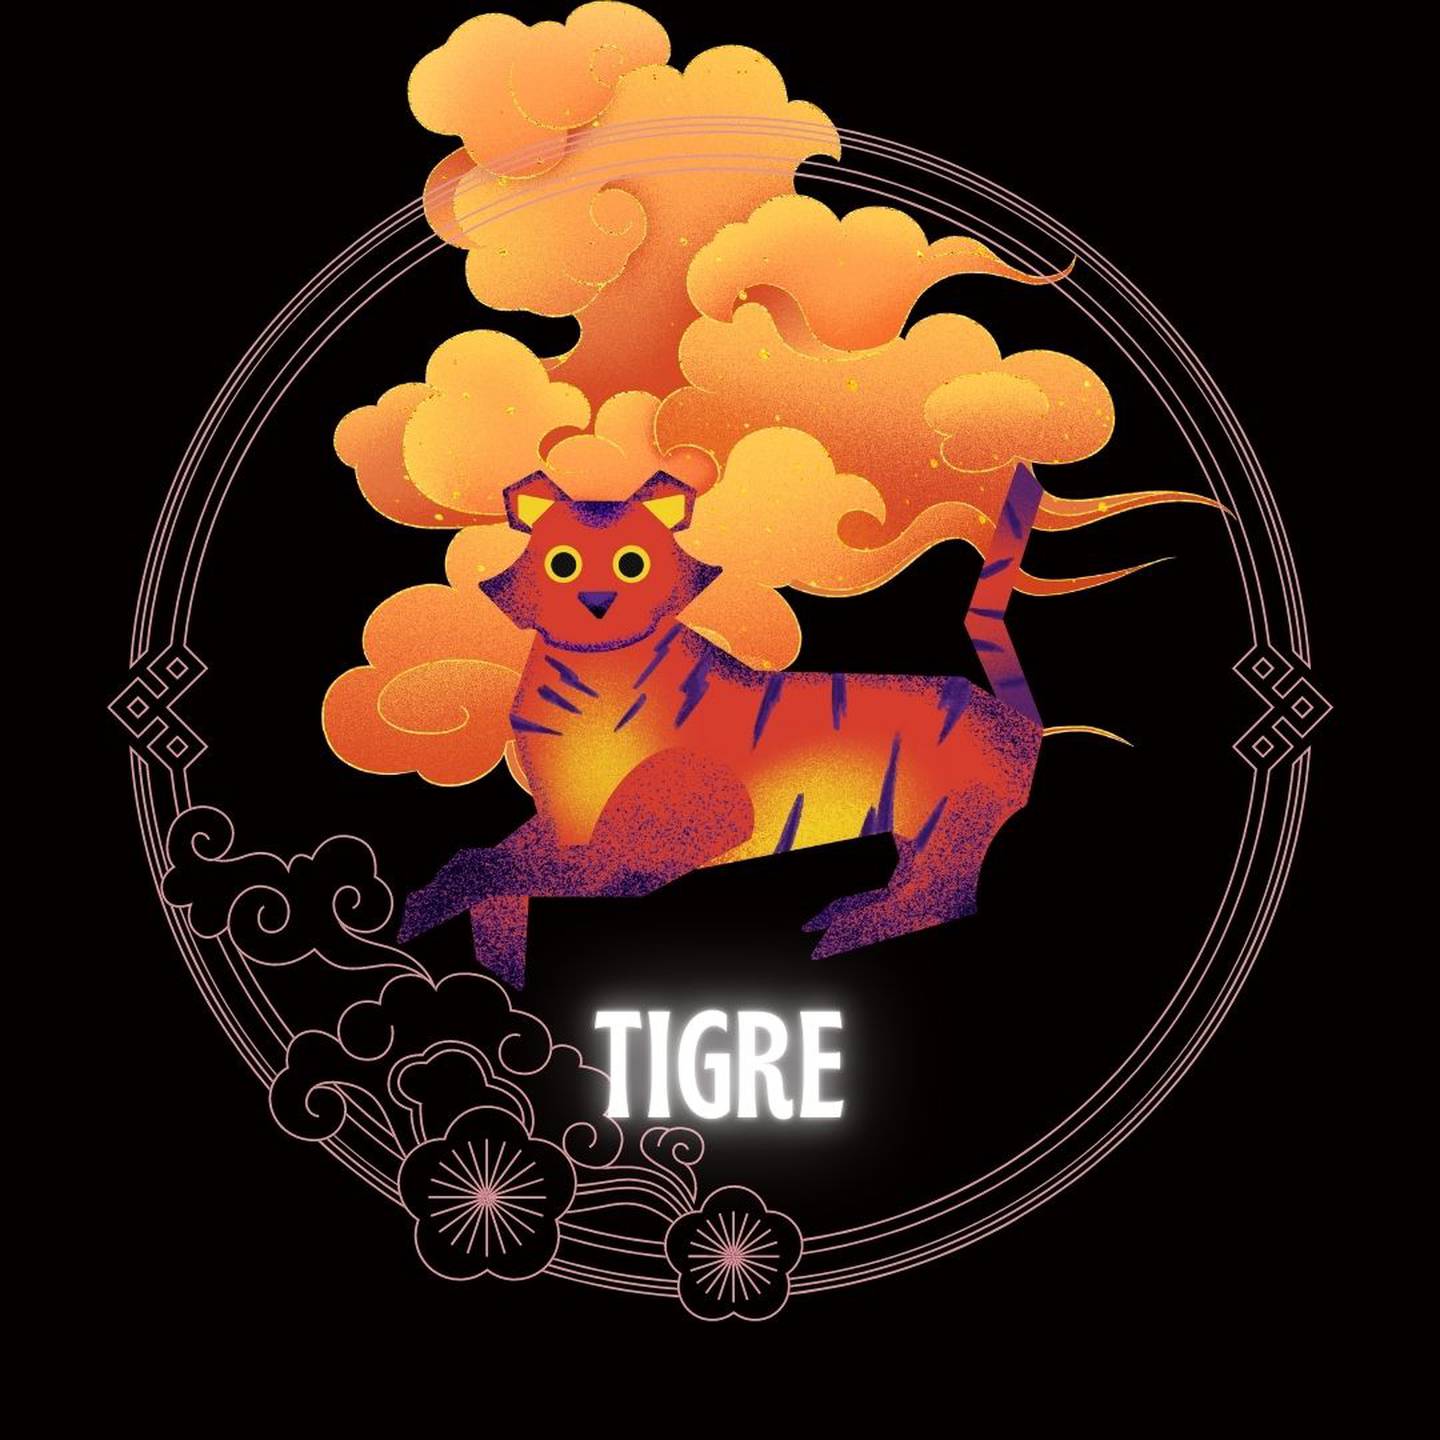 Caricatura de un tigre sobre un fondo negro, con motivos decorativos orientales dorados con forma de nube y círculo, que enmarcan el signo. Abajo del dibujo aparece la palabra tigre.